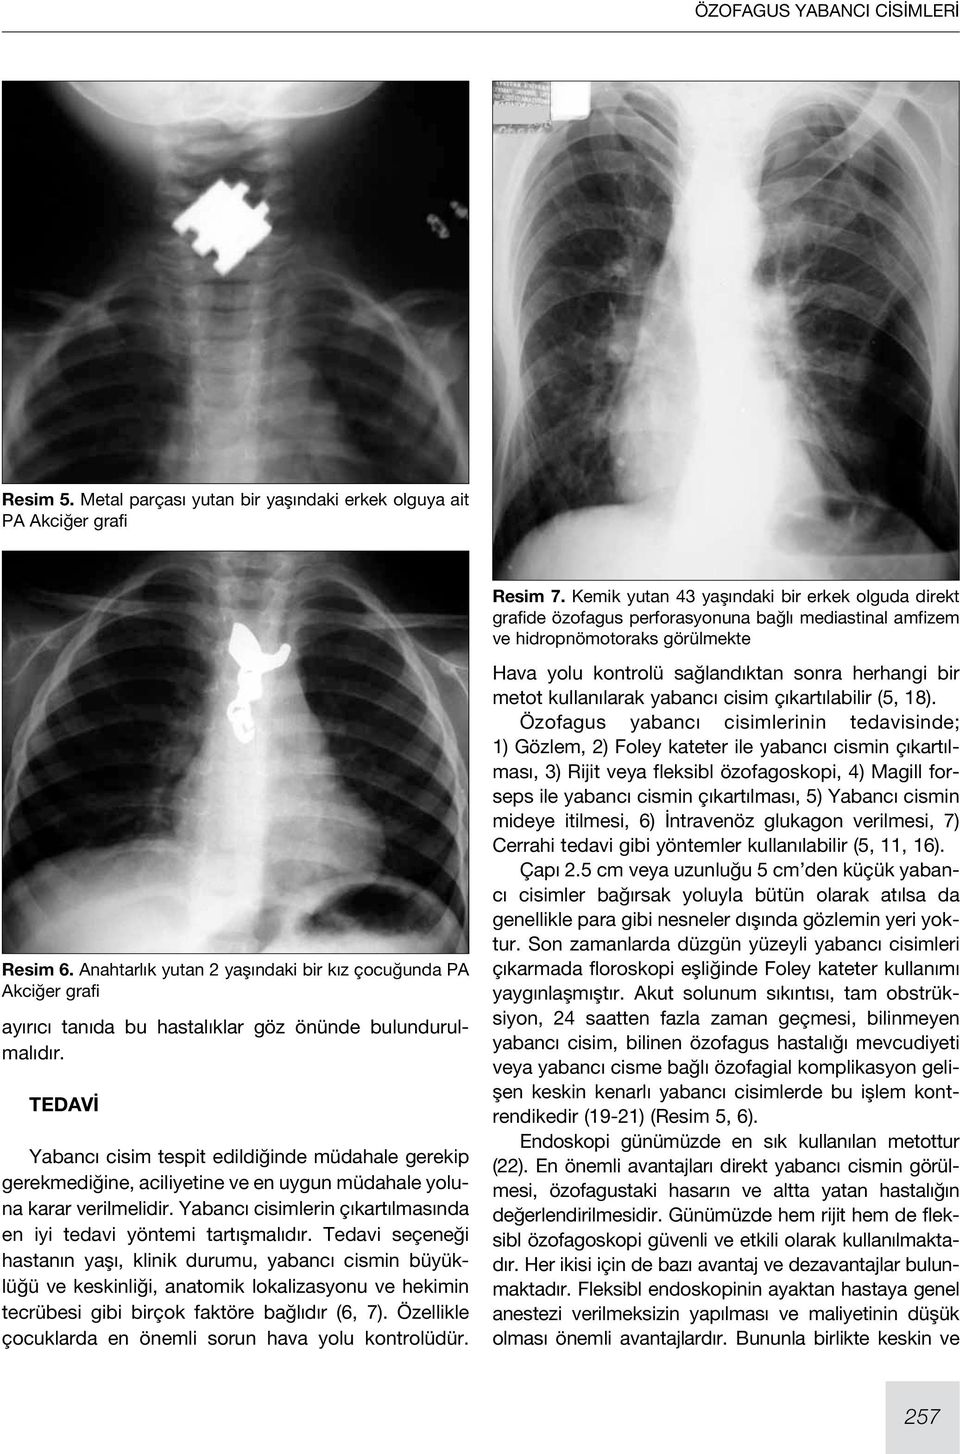 Anahtarlık yutan 2 yaşındaki bir kız çocuğunda PA Akciğer grafi ayırıcı tanıda bu hastalıklar göz önünde bulundurulmalıdır.